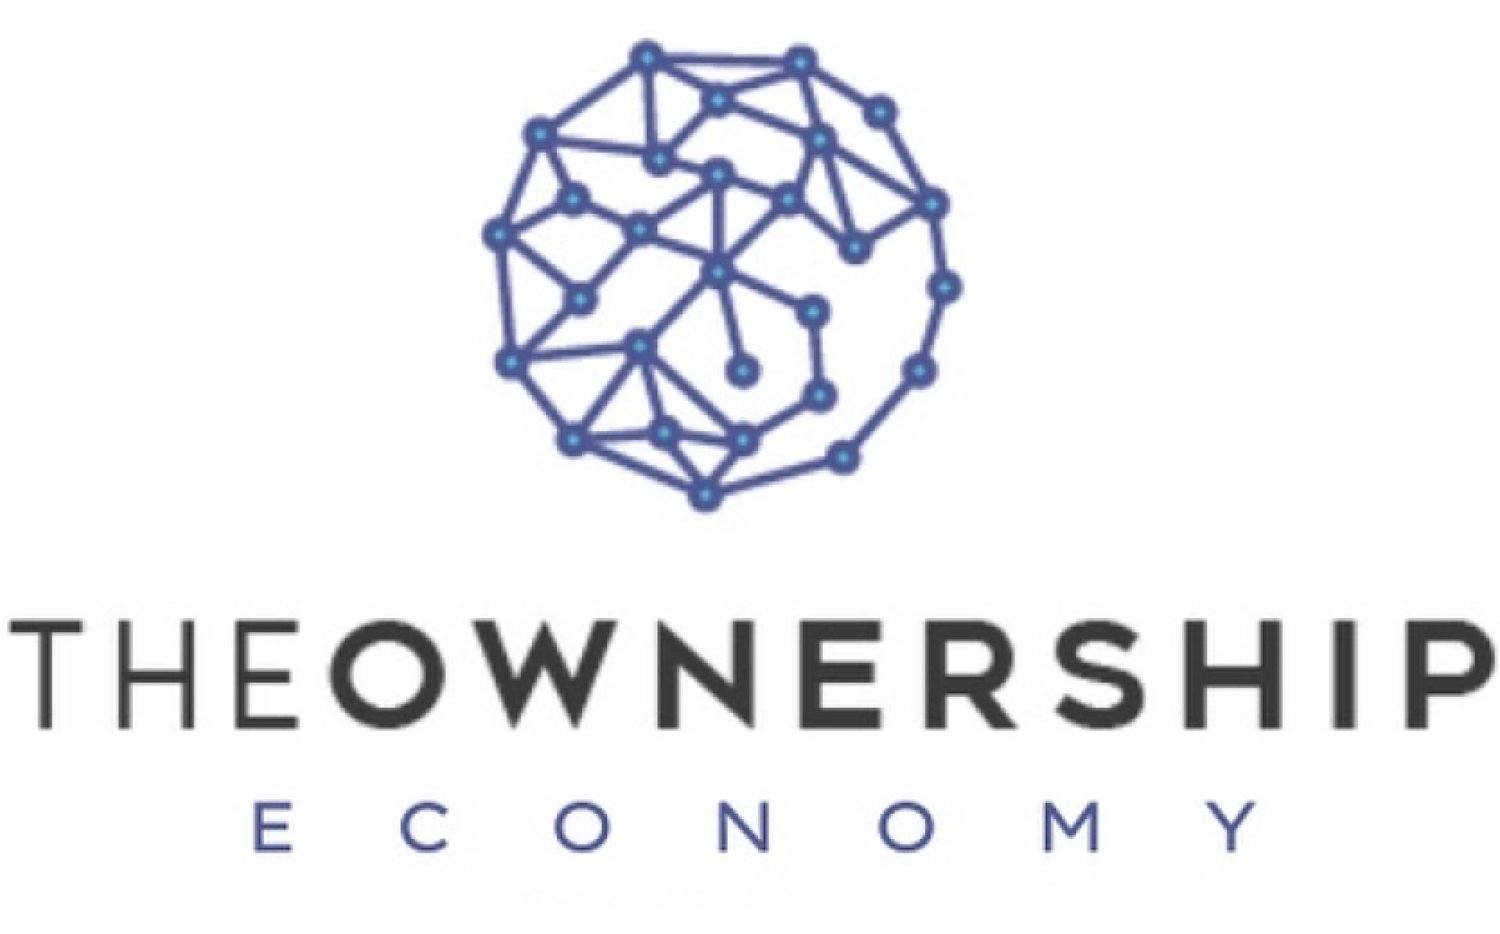 Ownership economy